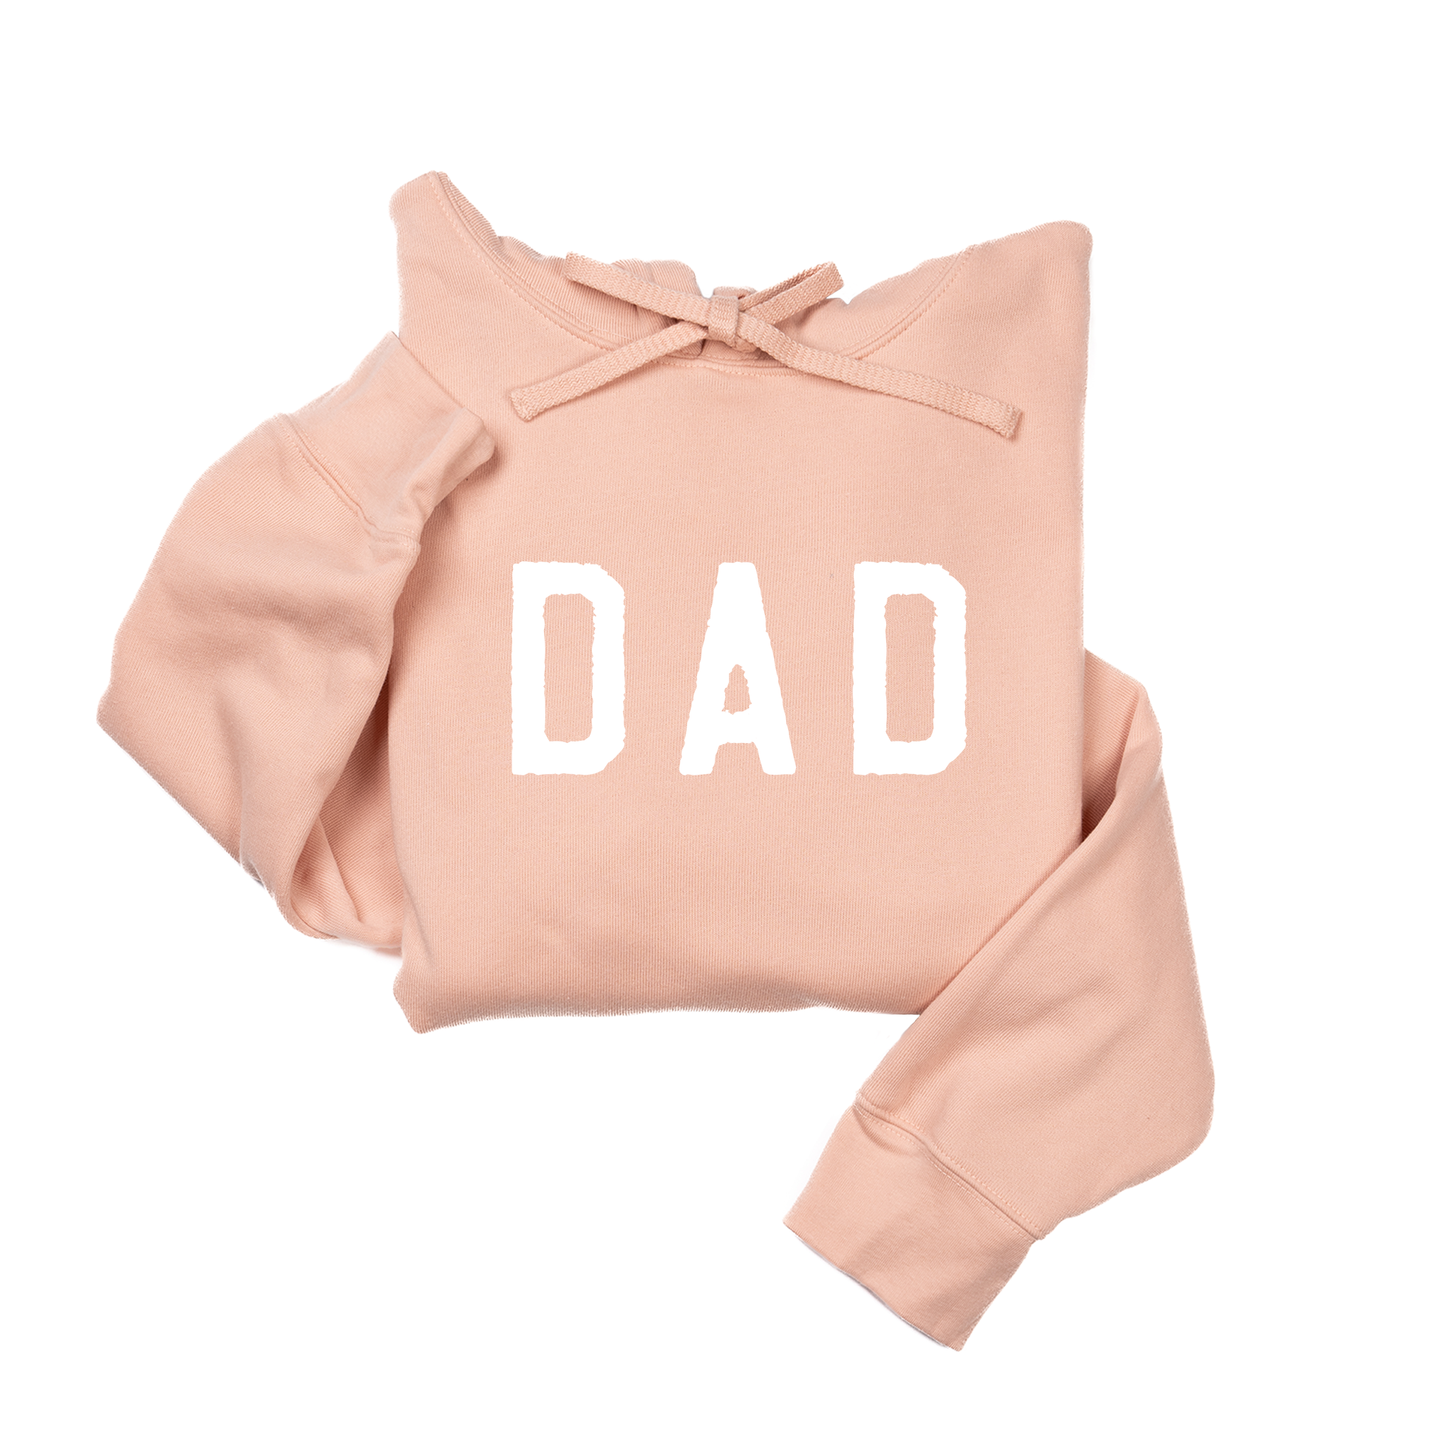 Dad (Rough, White) - Hoodie (Peach)